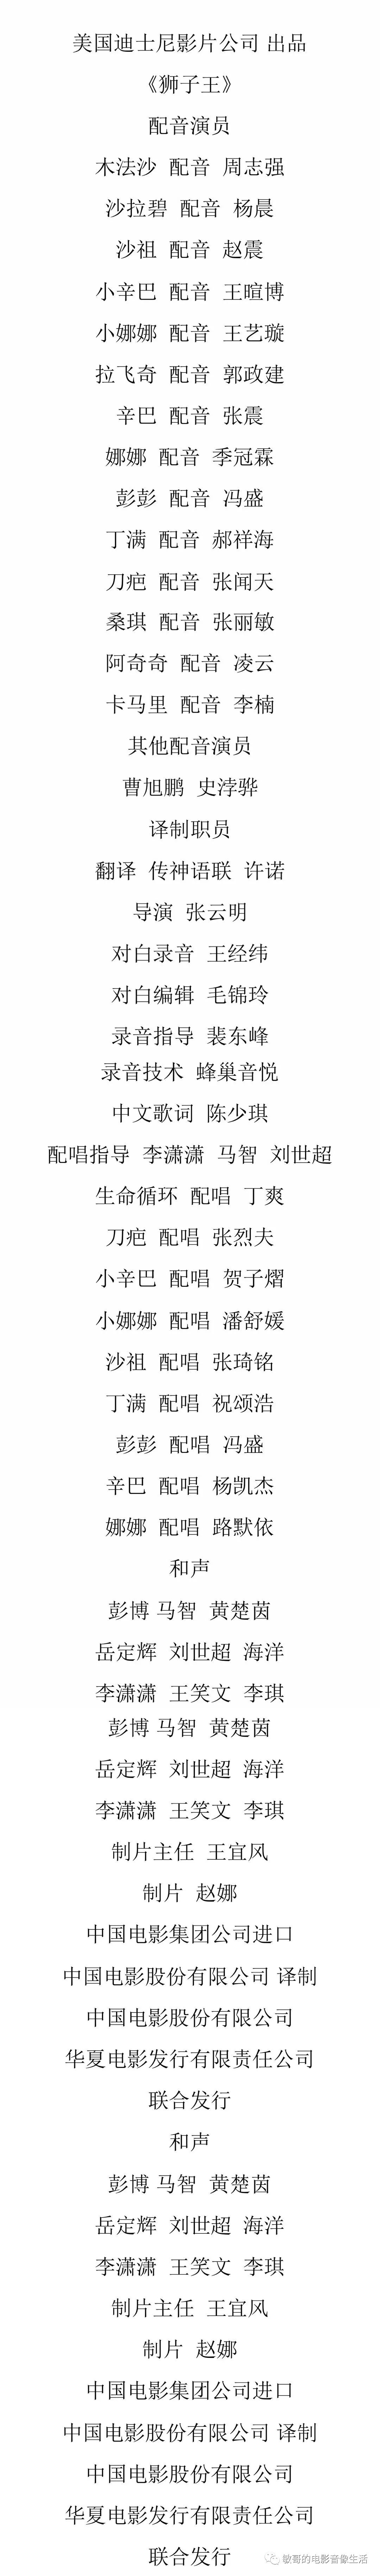 《狮子王》中文版配音演职员表